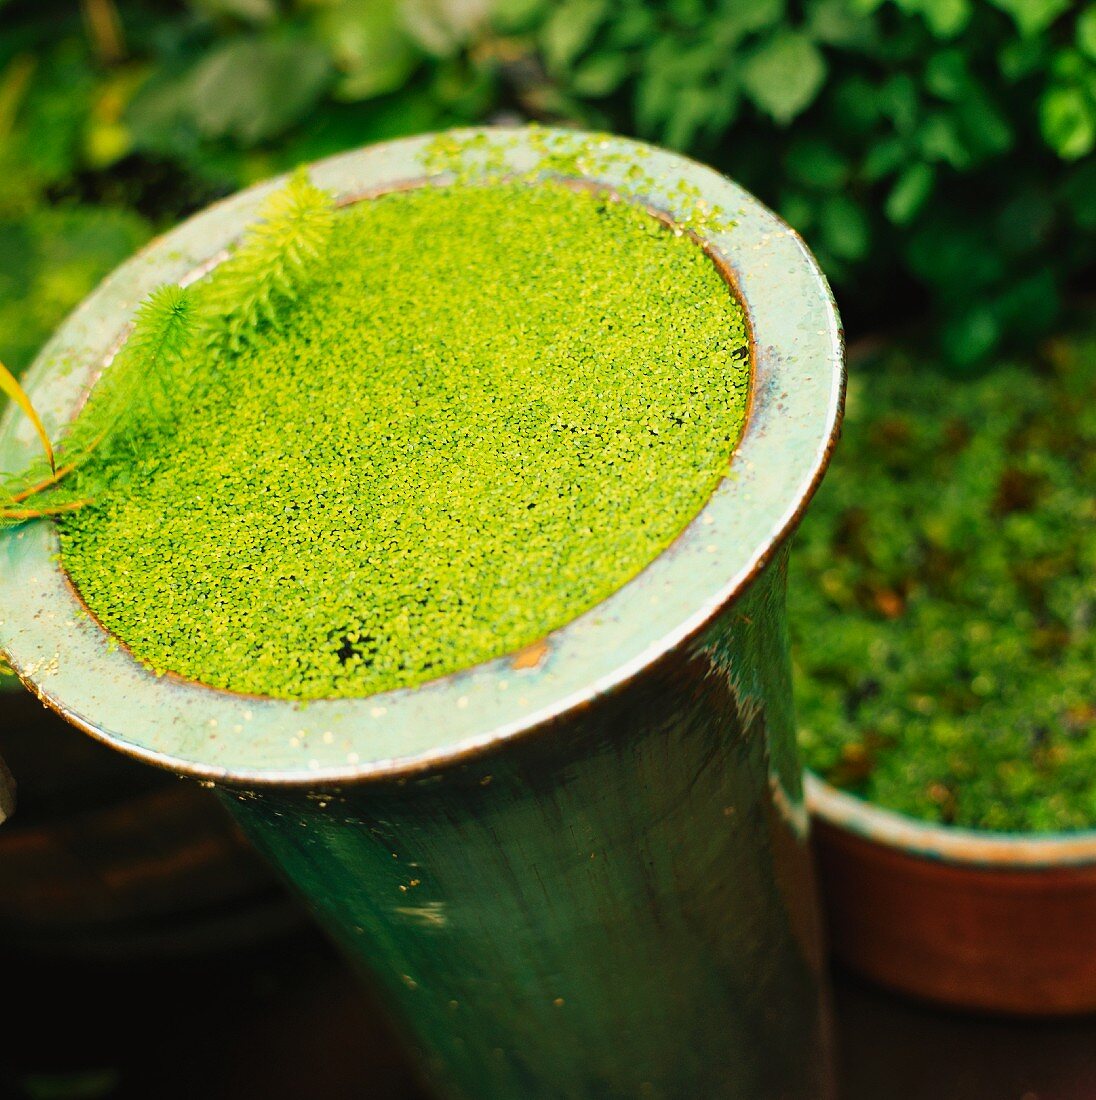 Green aquatic plant on pot, close-up